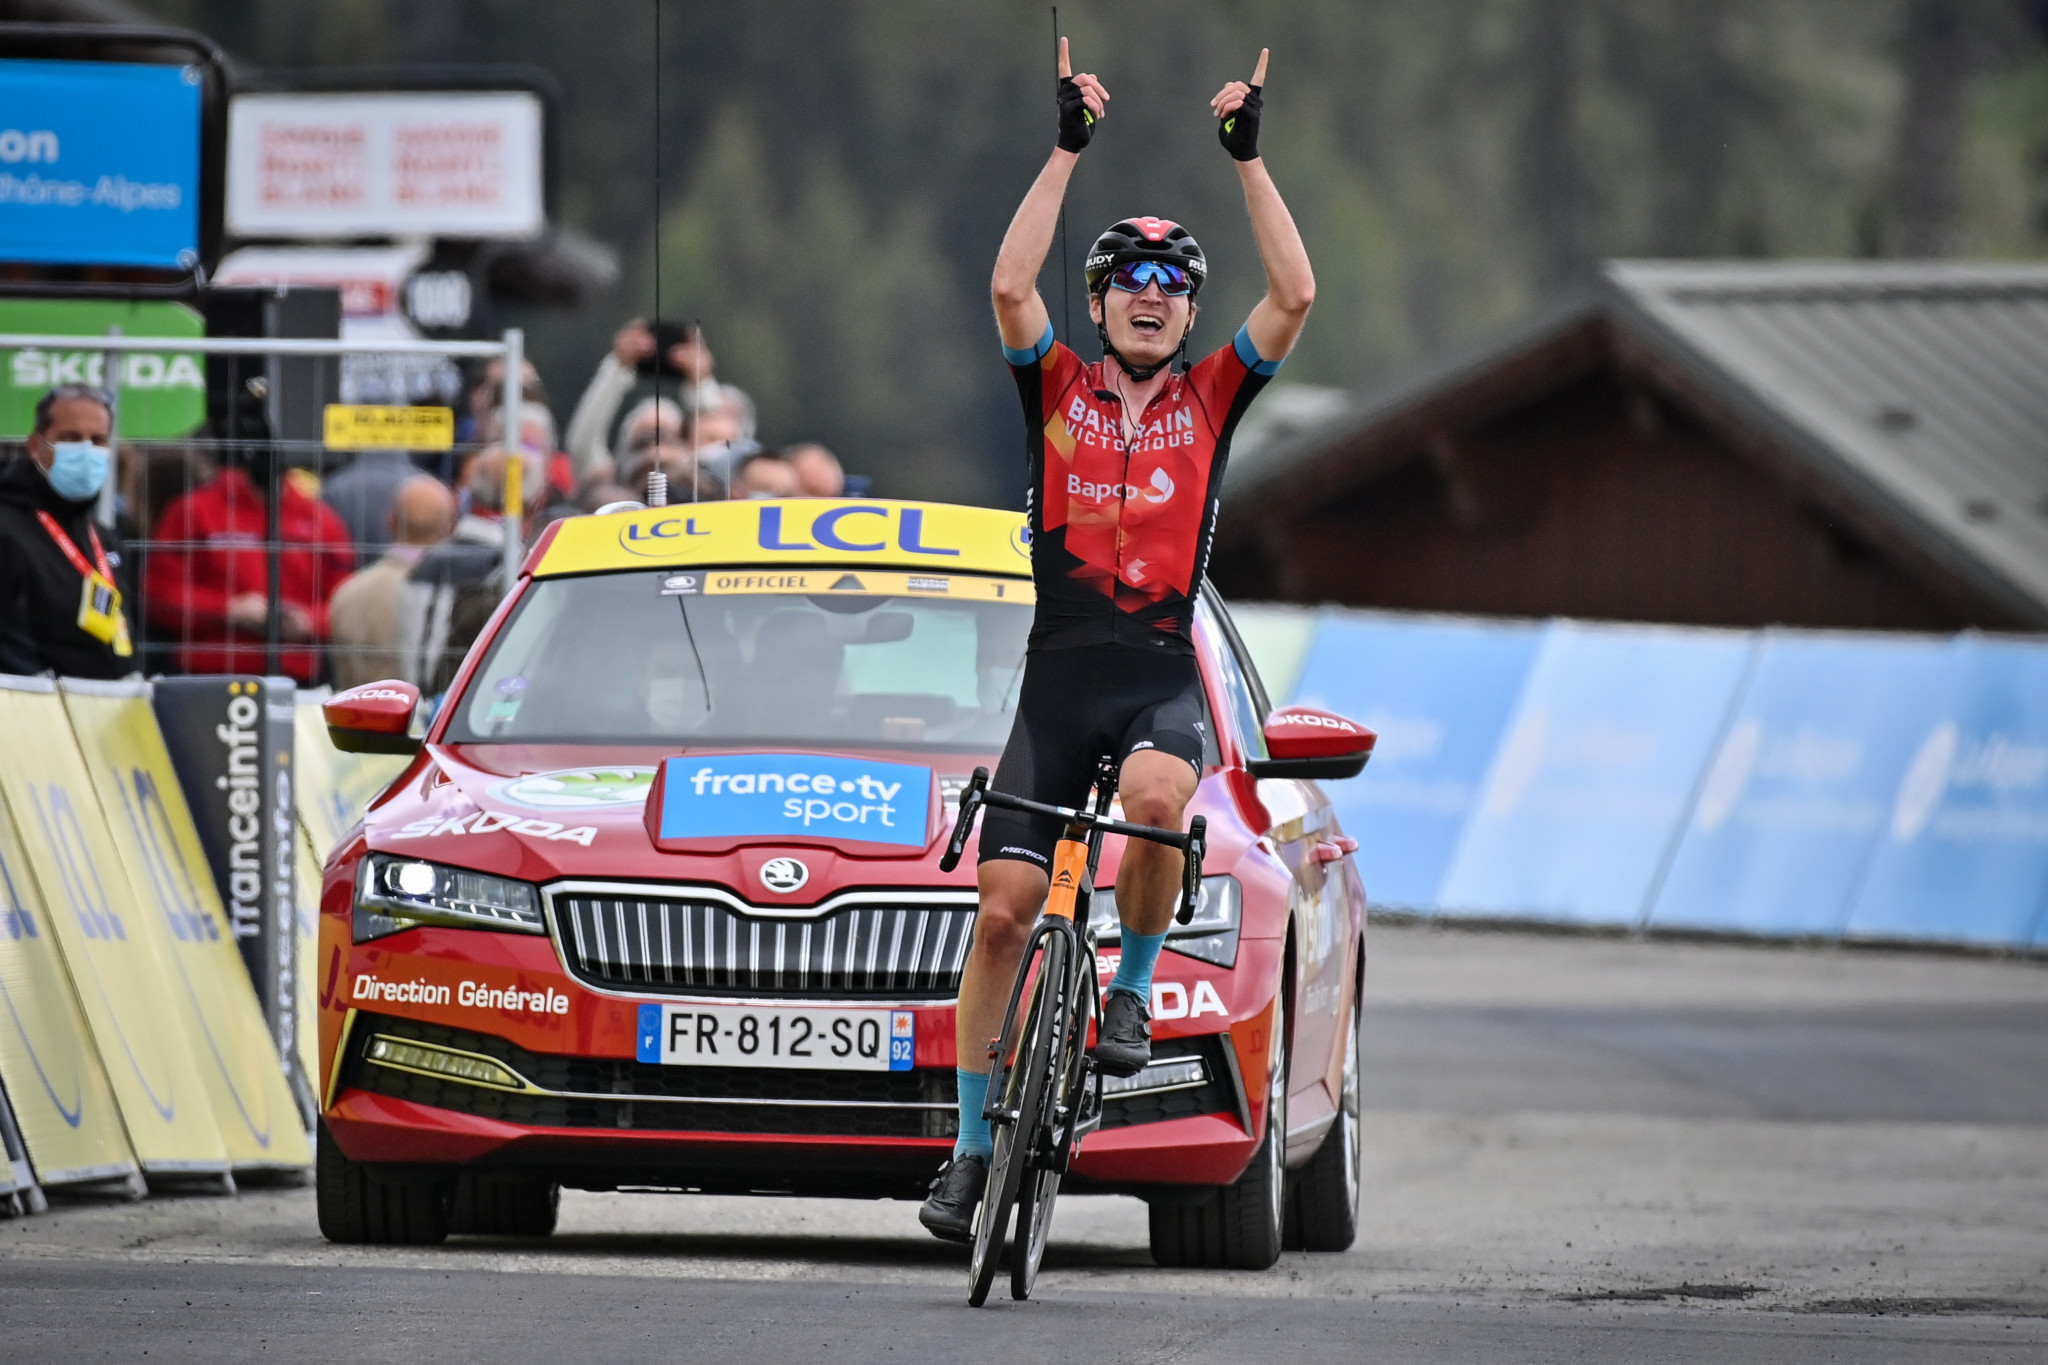 Padun wins queen stage of Critérium du Dauphiné as Porte takes race lead